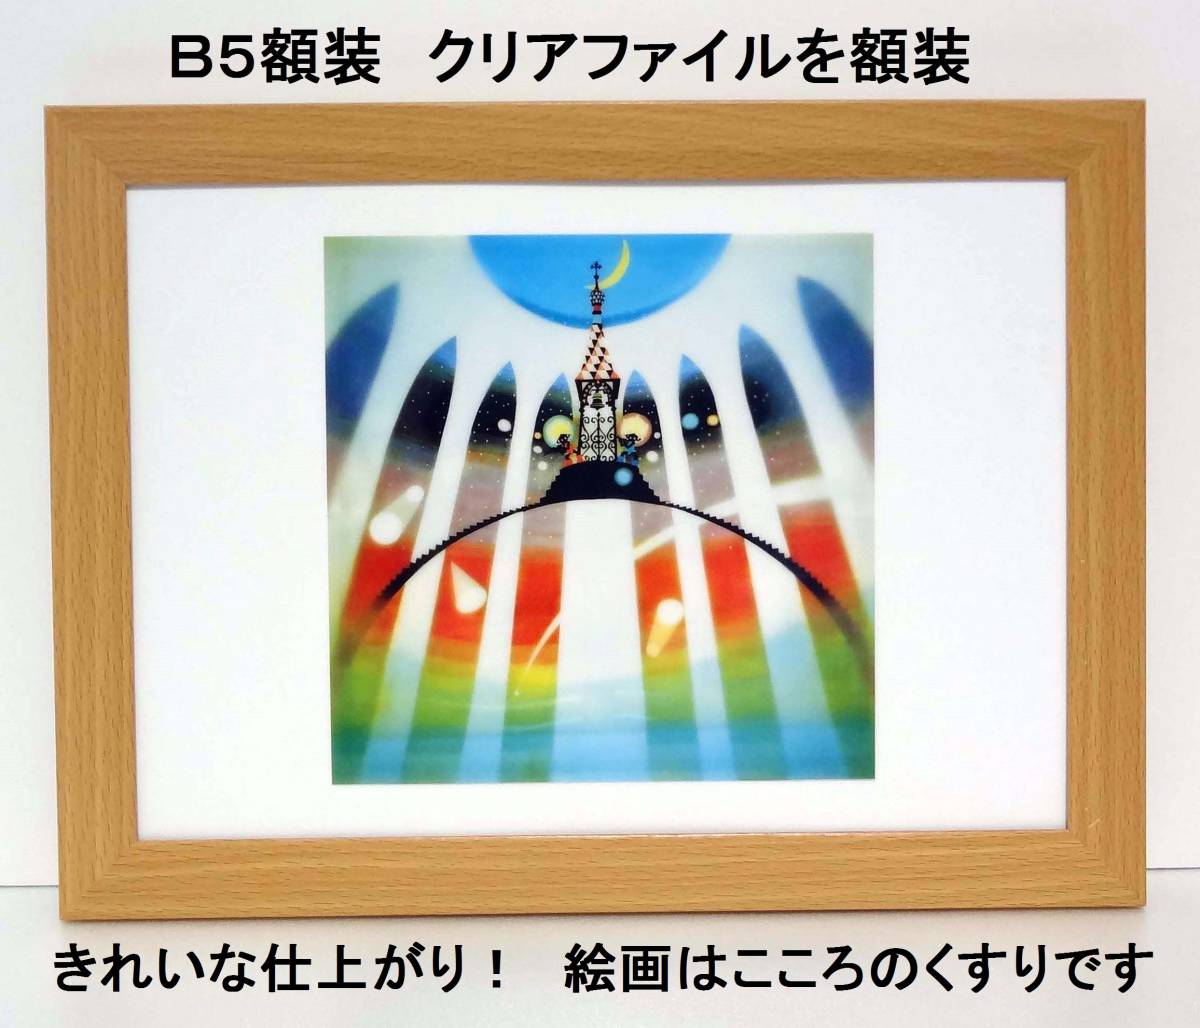 बेहद मूल्यवान! सेजी फुजीशिरो के ट्विन स्टार्स की अप्रयुक्त स्पष्ट फ़ाइल एक नए B5 फ्रेम में, कलाकृति, चित्रकारी, अन्य